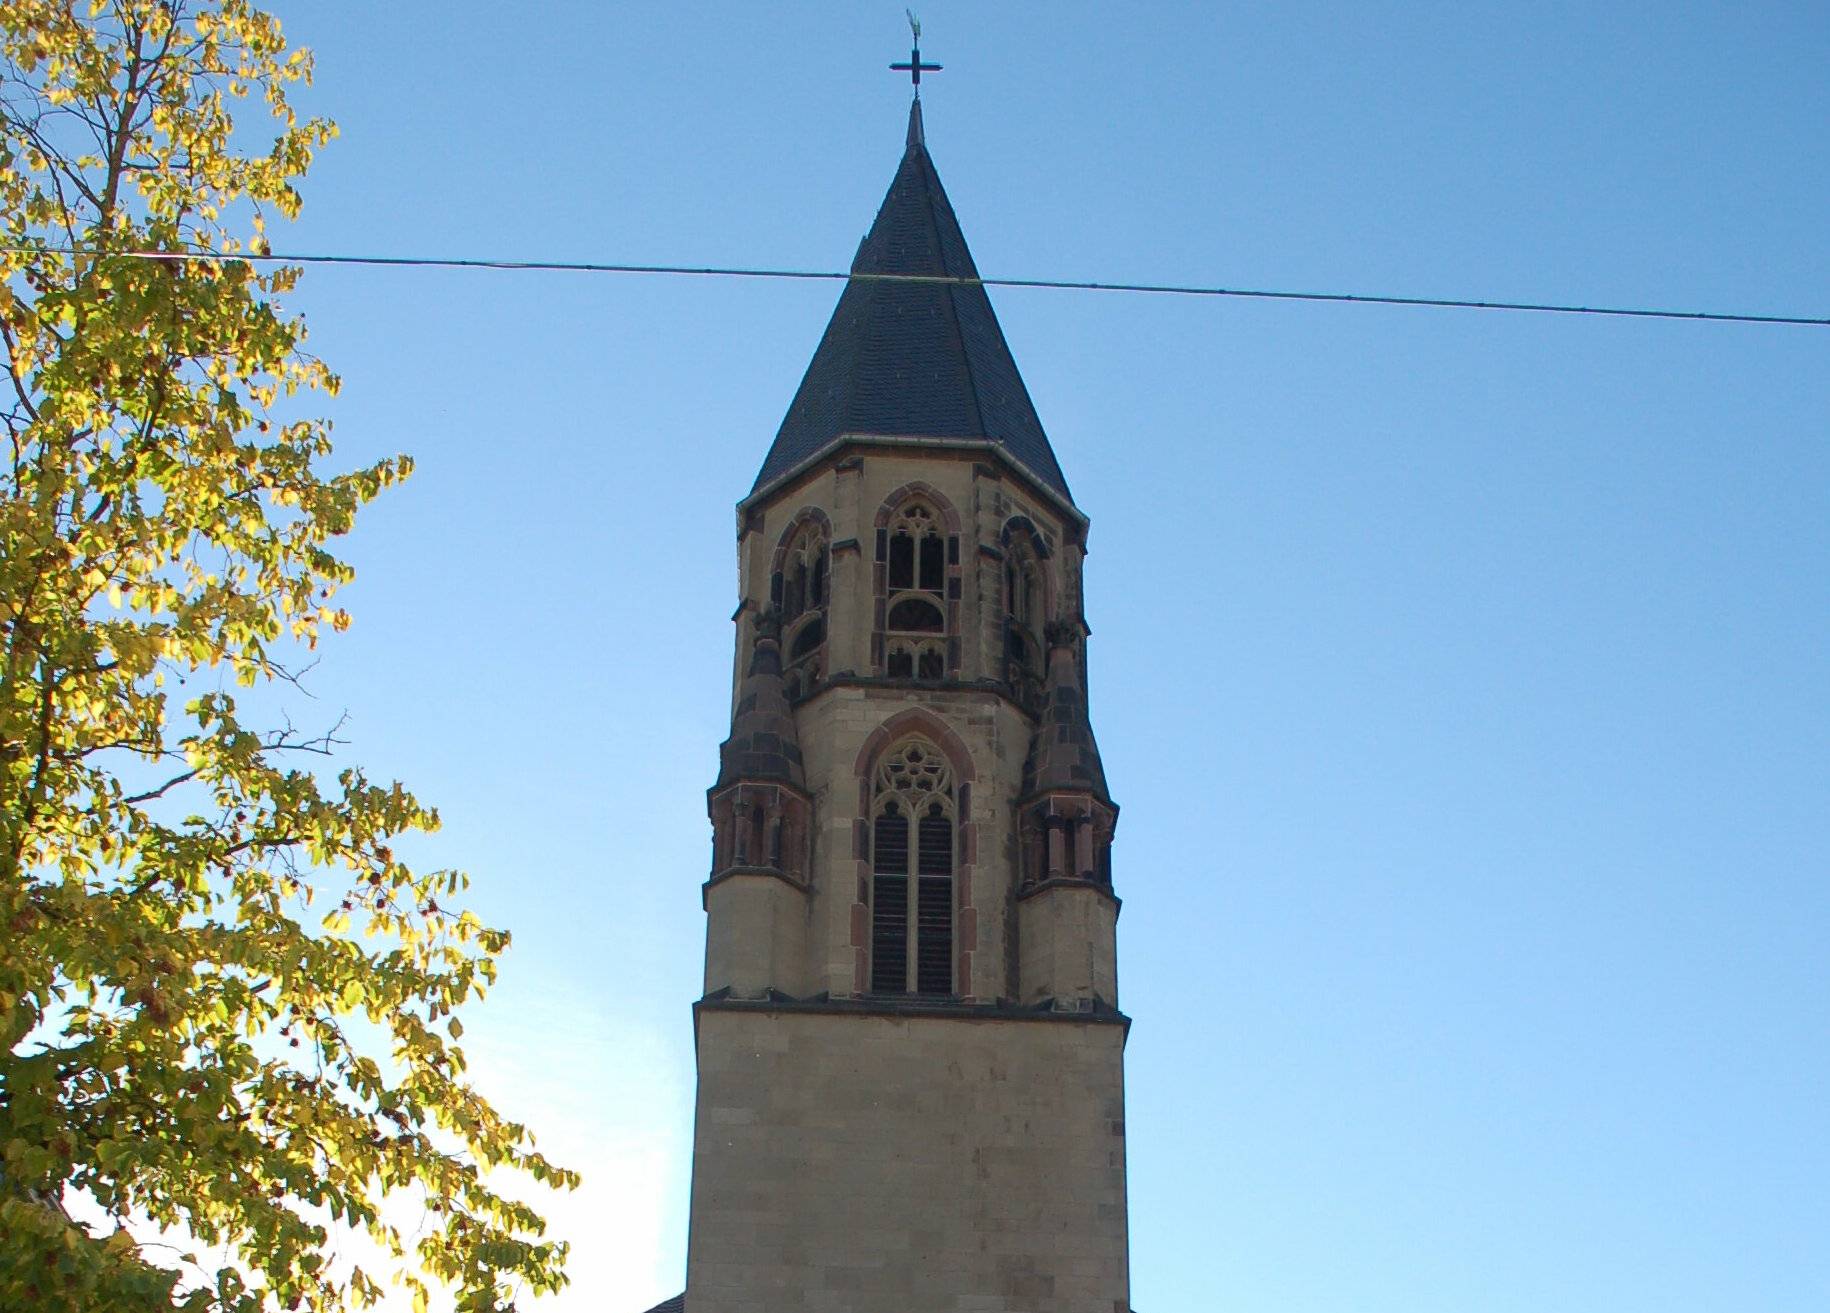  Der Turm der Herz-Jesu-Kirche in Unterbarmen.   